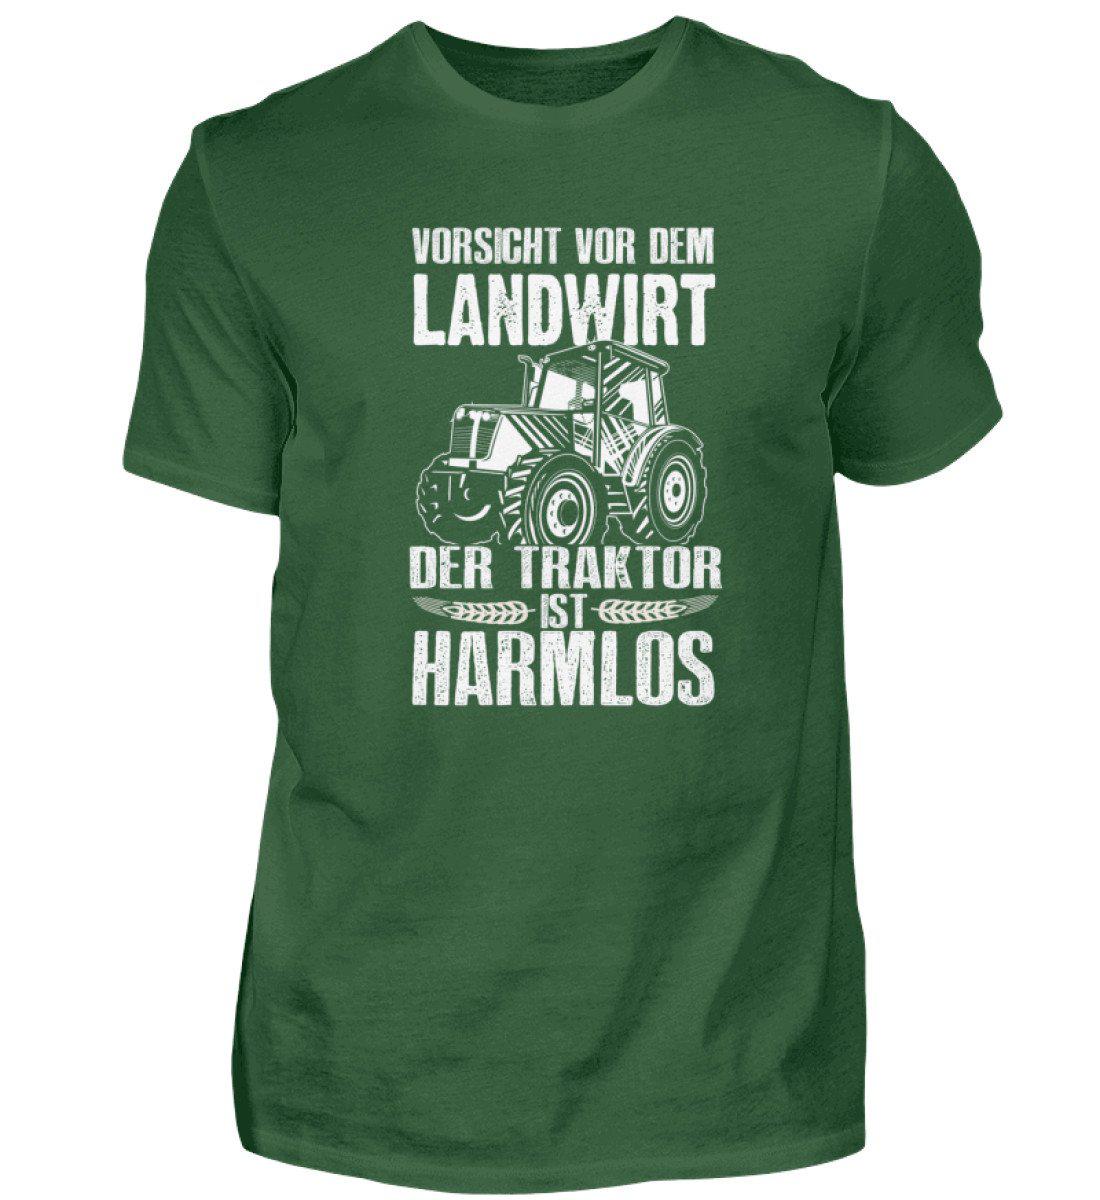 Der Traktor ist harmlos · Herren T-Shirt-Herren Basic T-Shirt-Bottle Green-S-Agrarstarz